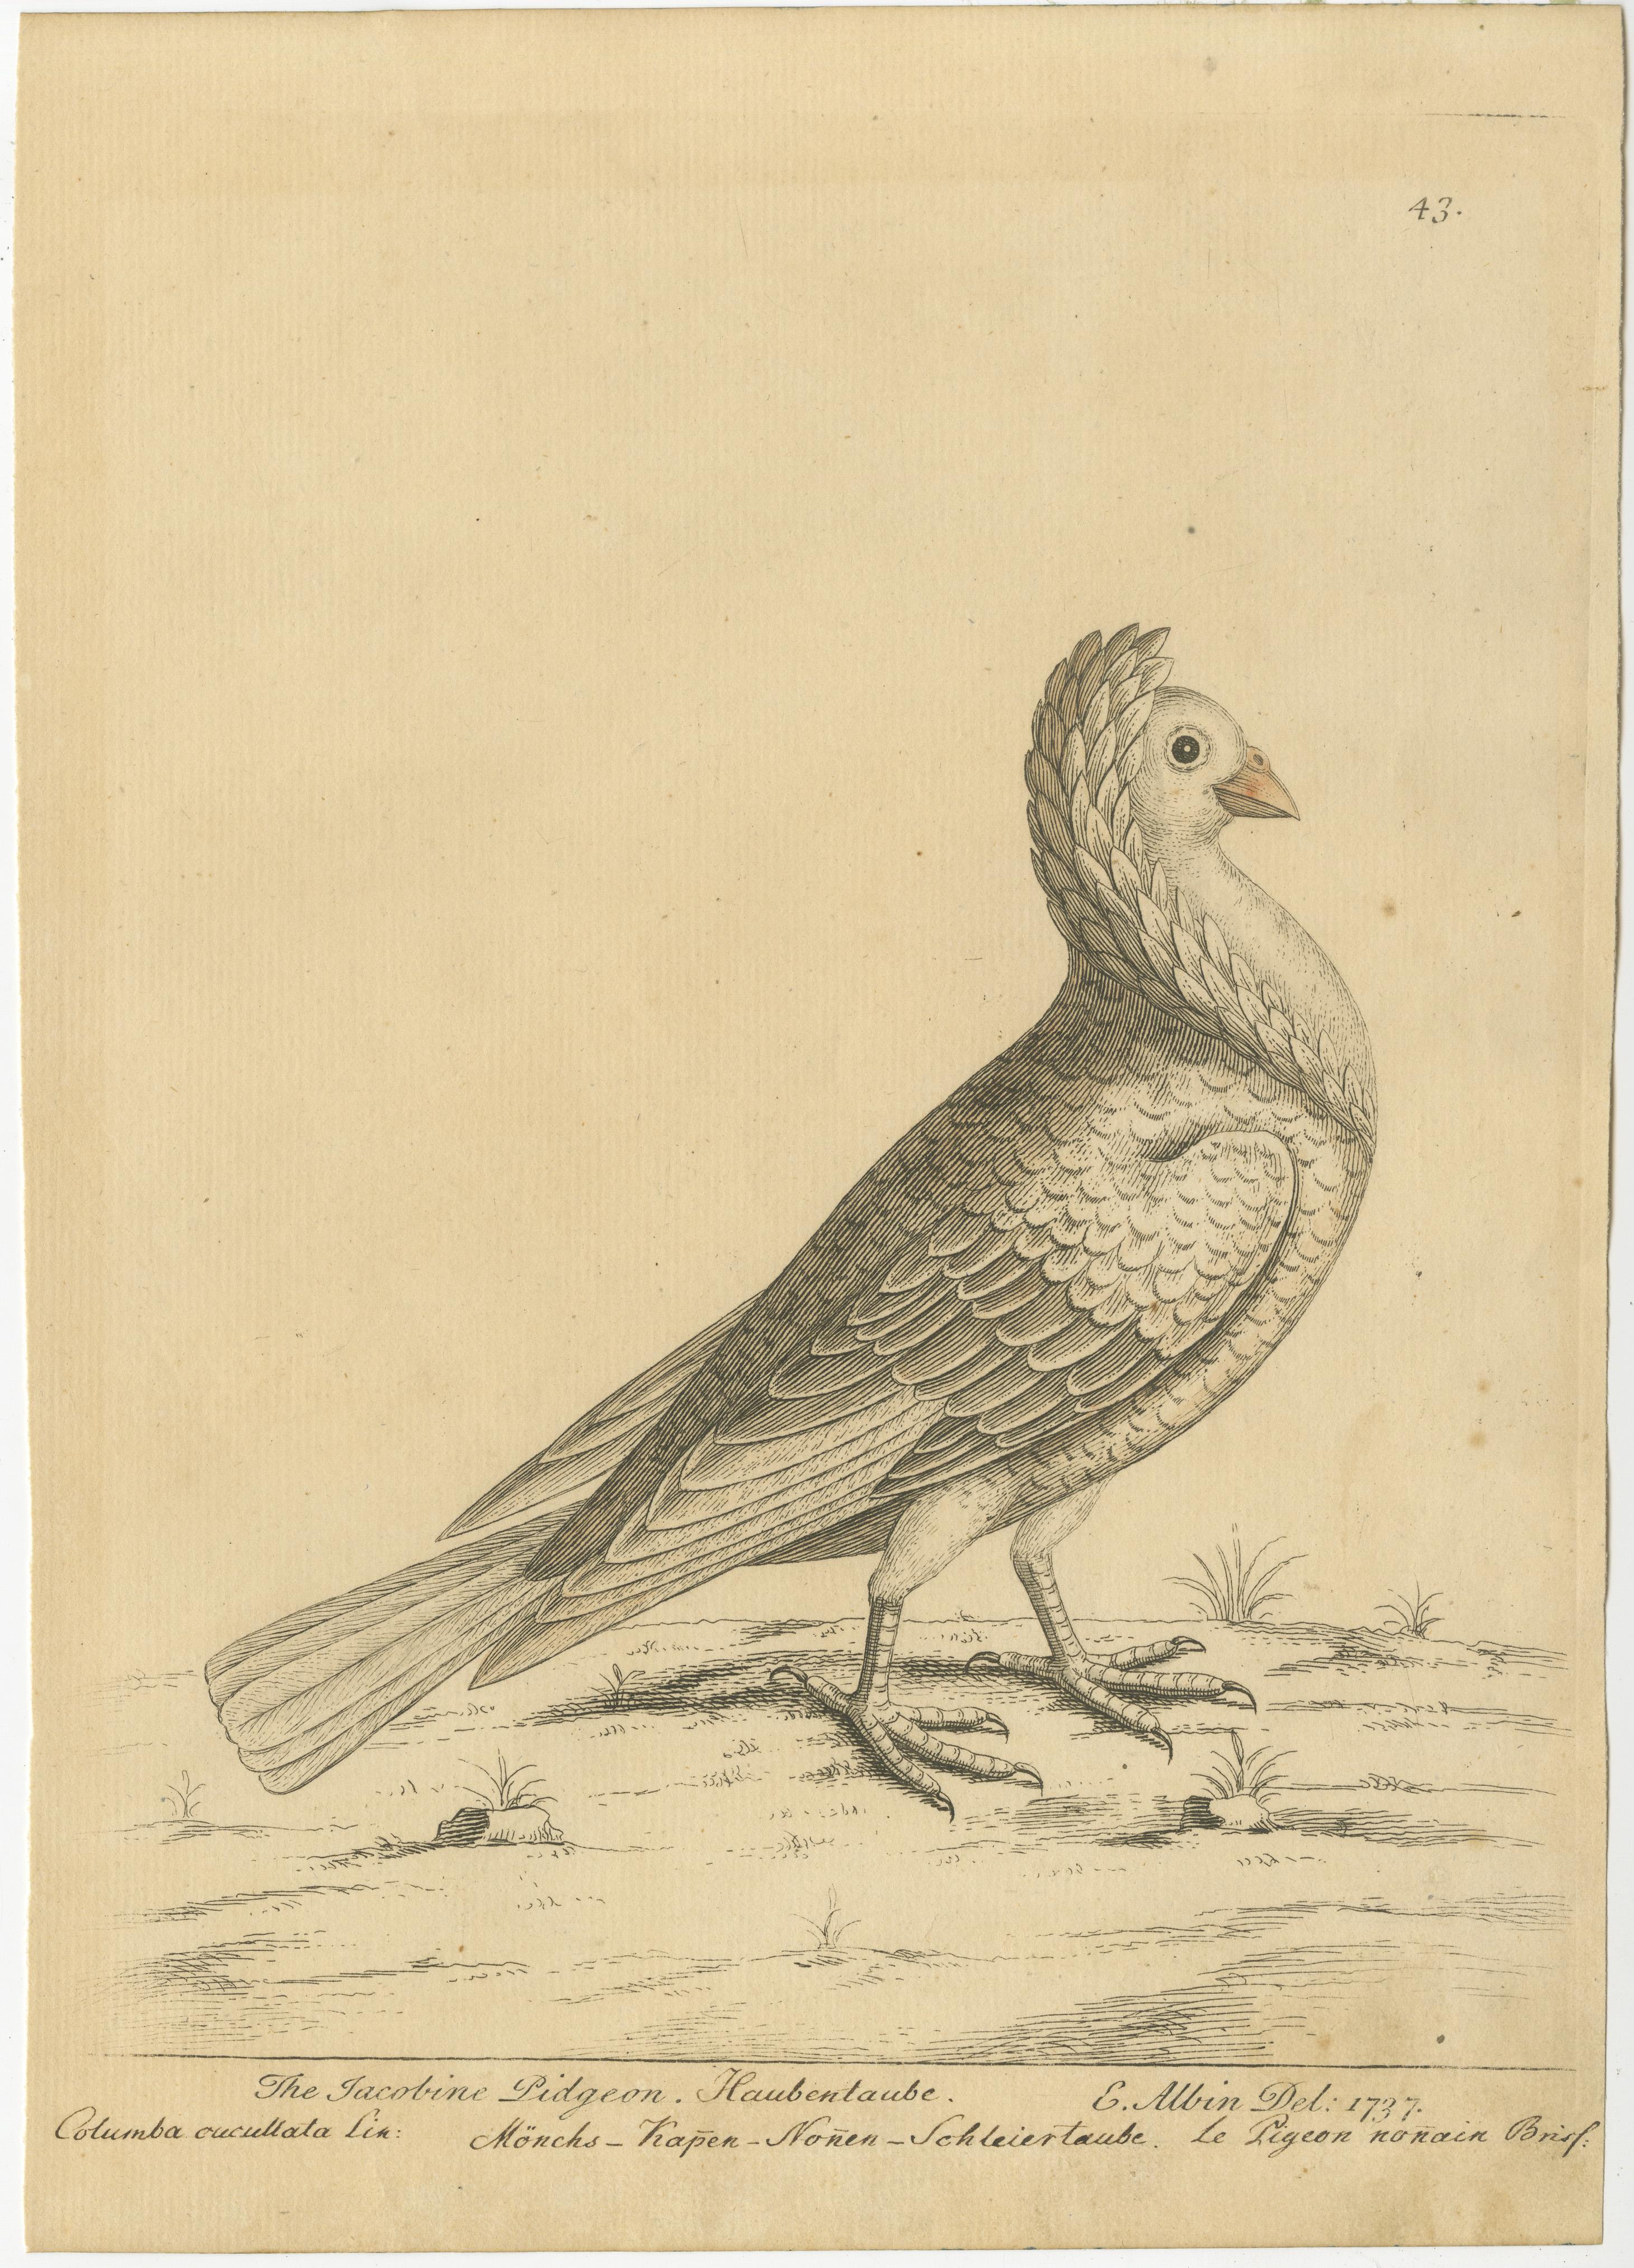 Antiker Vogeldruck mit dem Titel 'The Jacobine Pidgeon'. Originaler antiker Druck einer Perlentaube. Dieser Druck stammt aus 